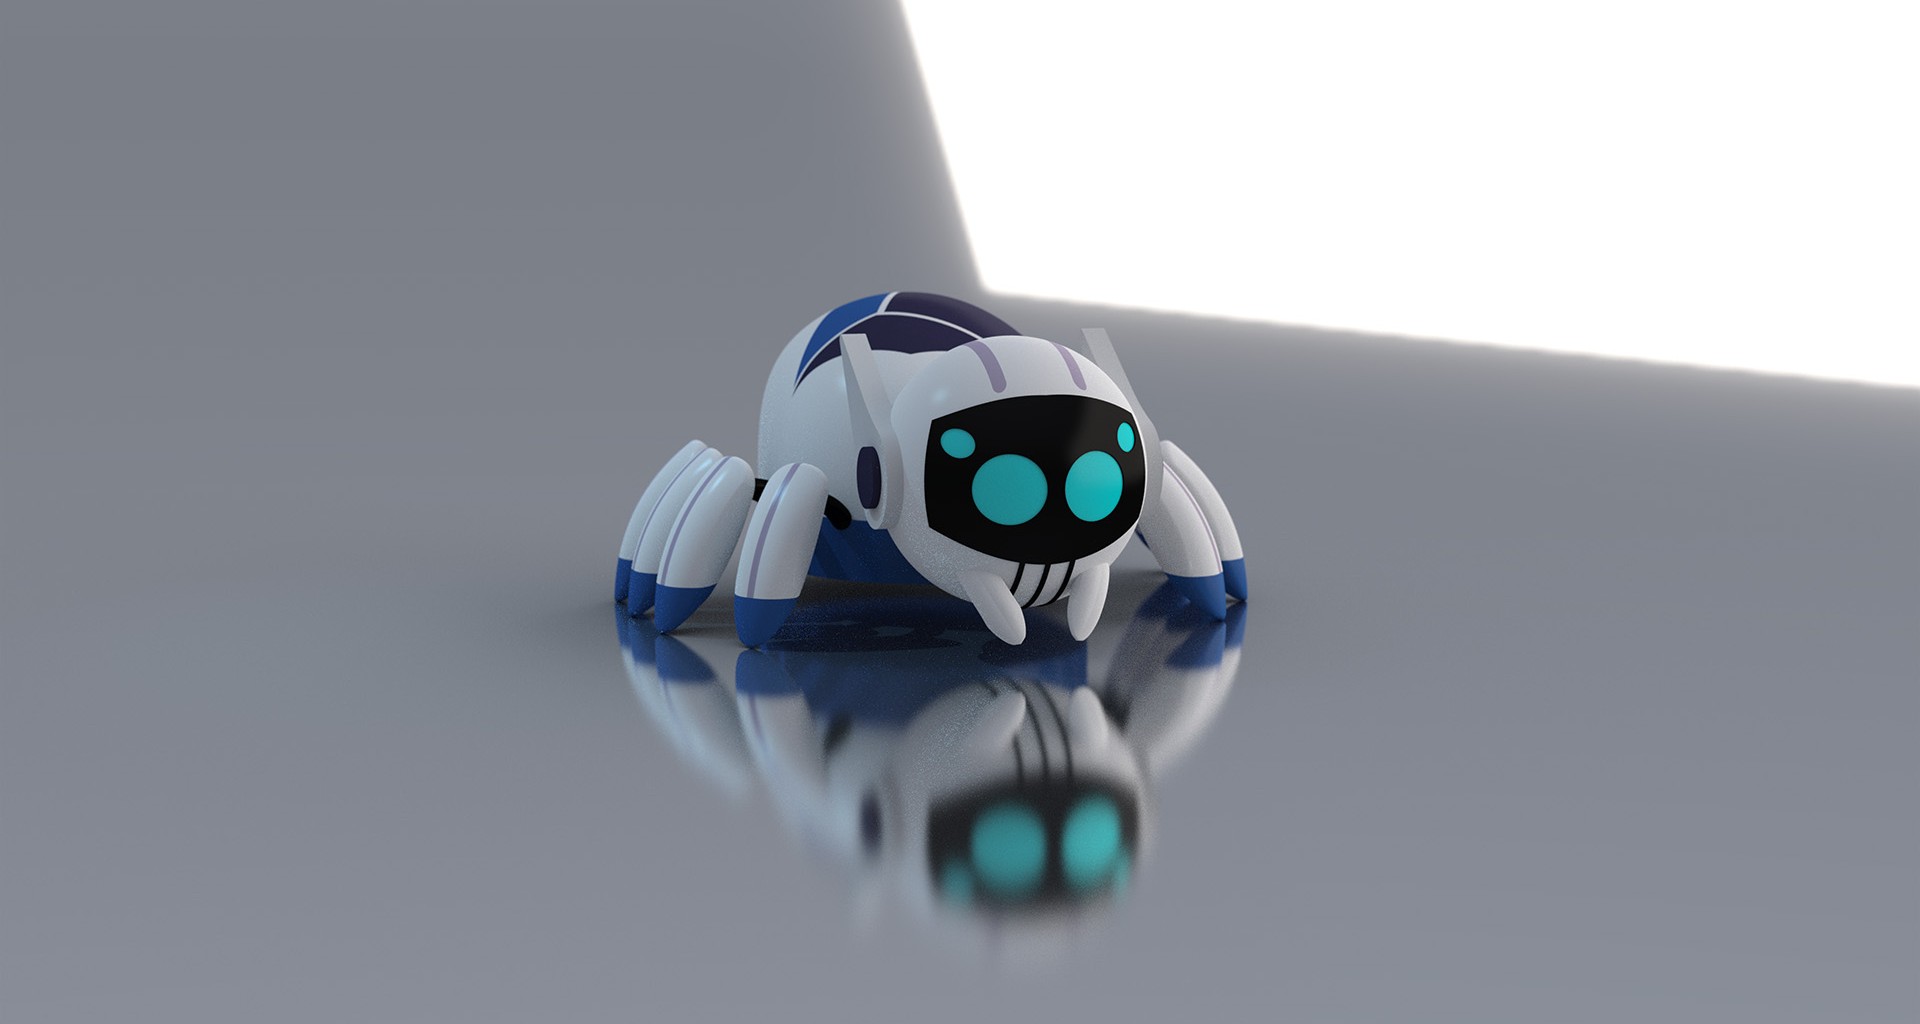 Egresado Tec diseña y gana concurso internacional con un “Spiderbot”